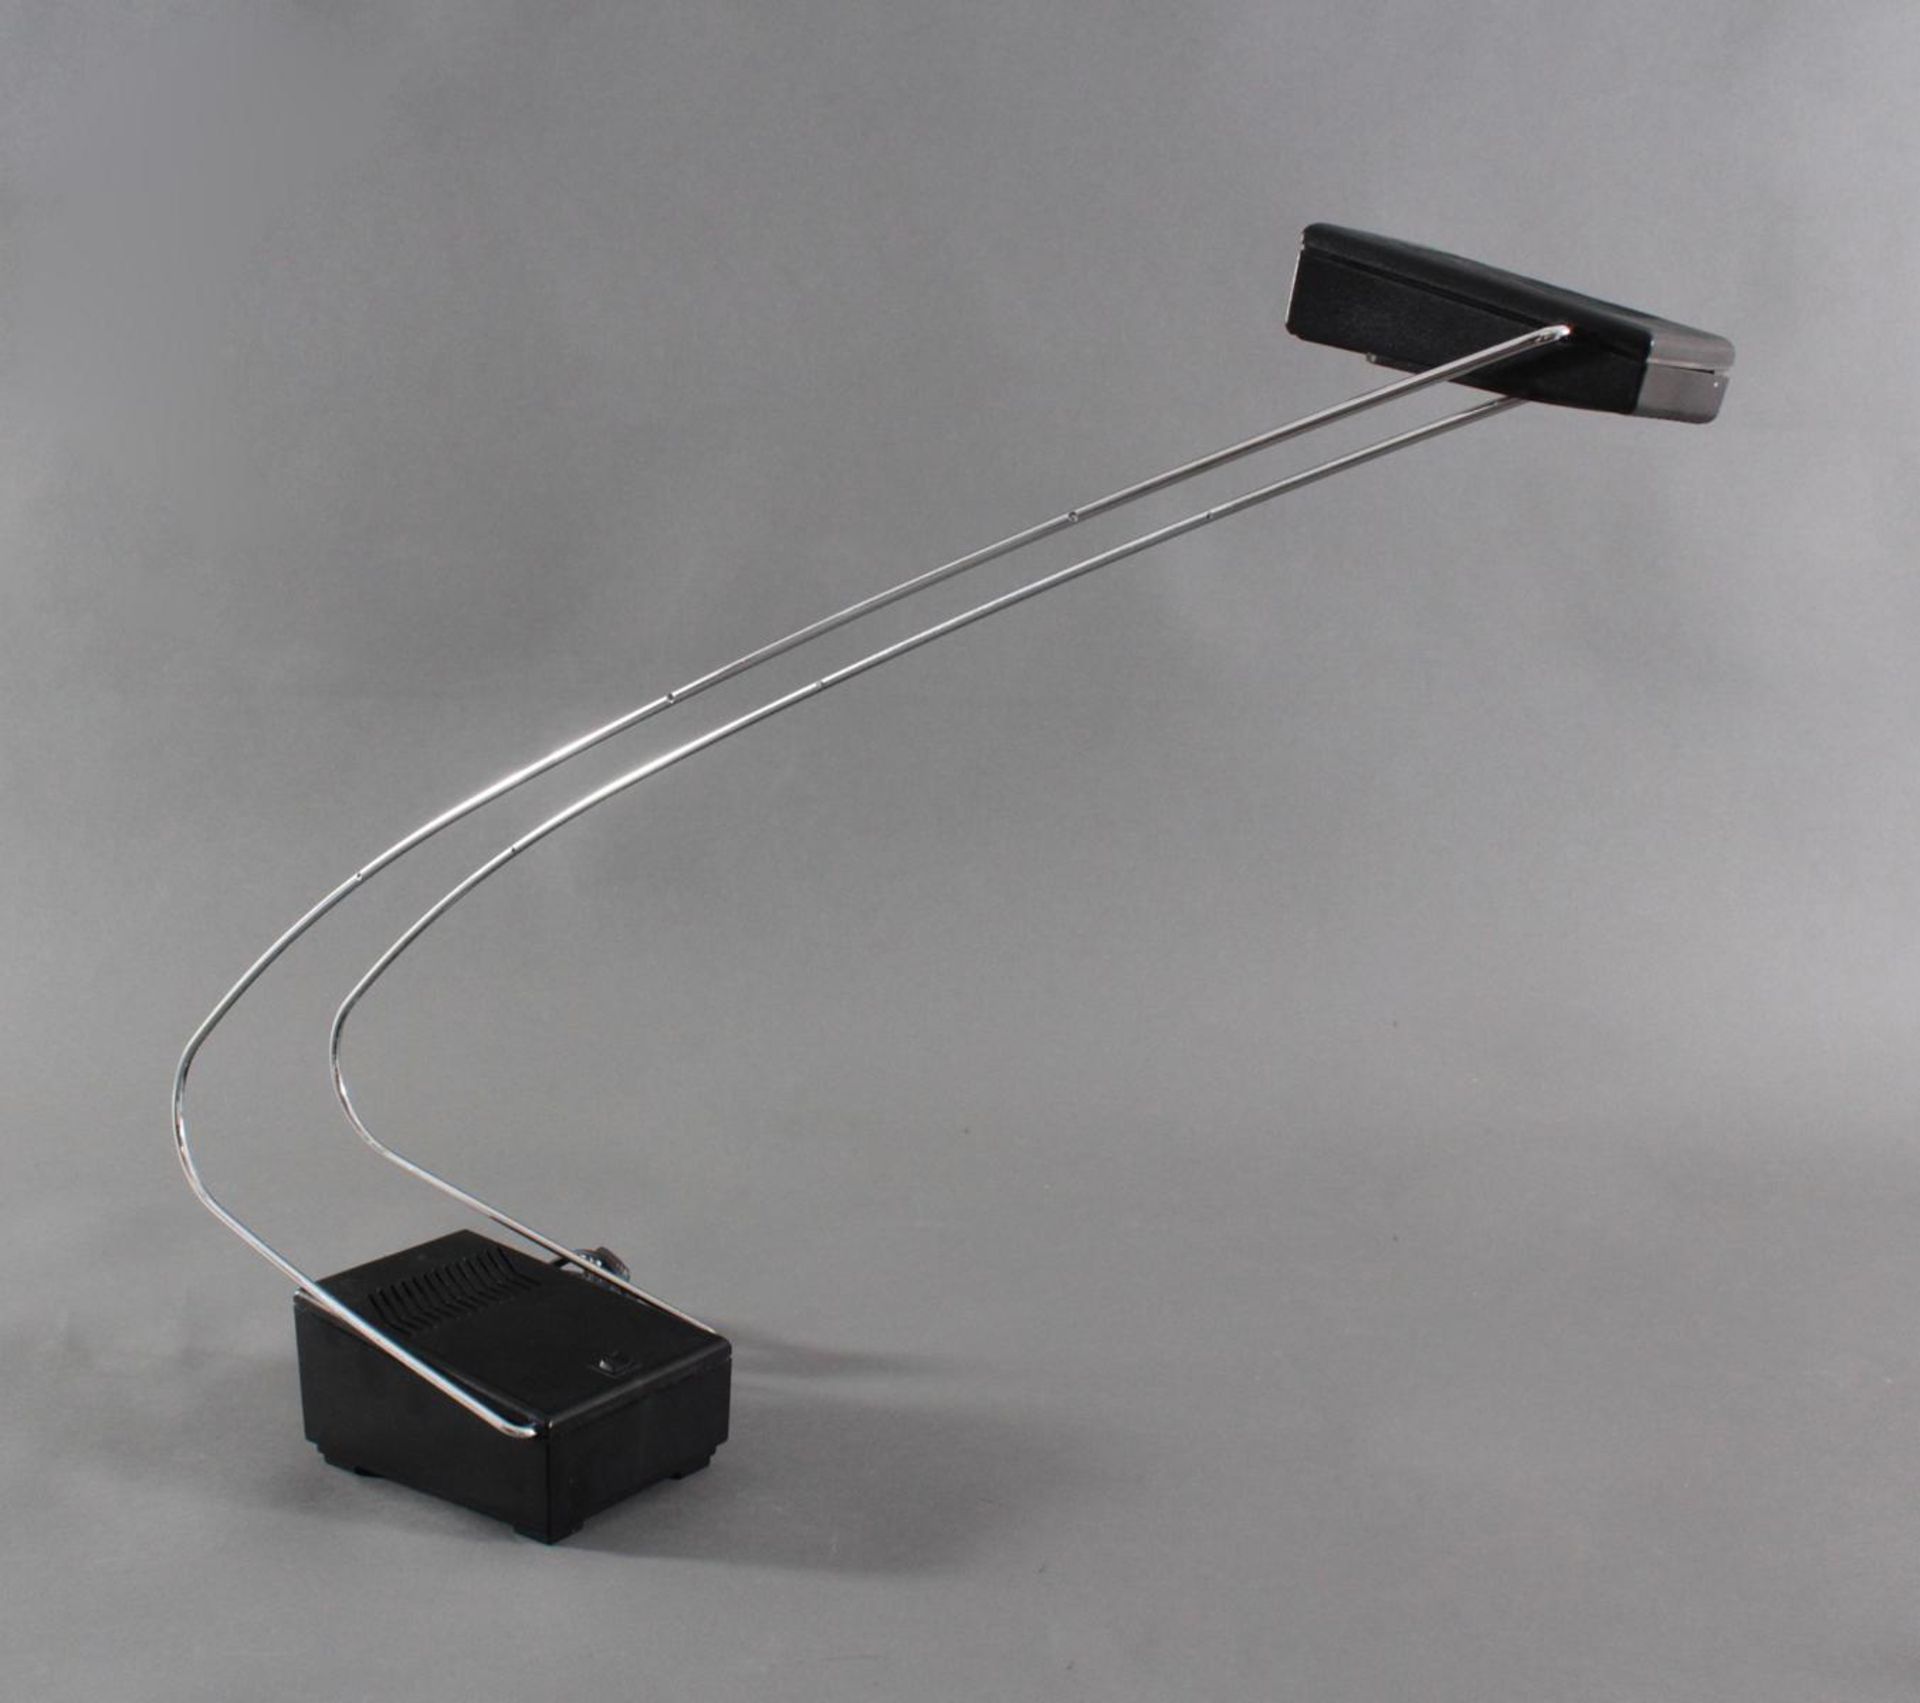 Designer Tischlampe, 80er JahreKunststoff/Metall. Lampe mit Halogen Beleuchtung, ca. H-52 cm. - Bild 3 aus 3